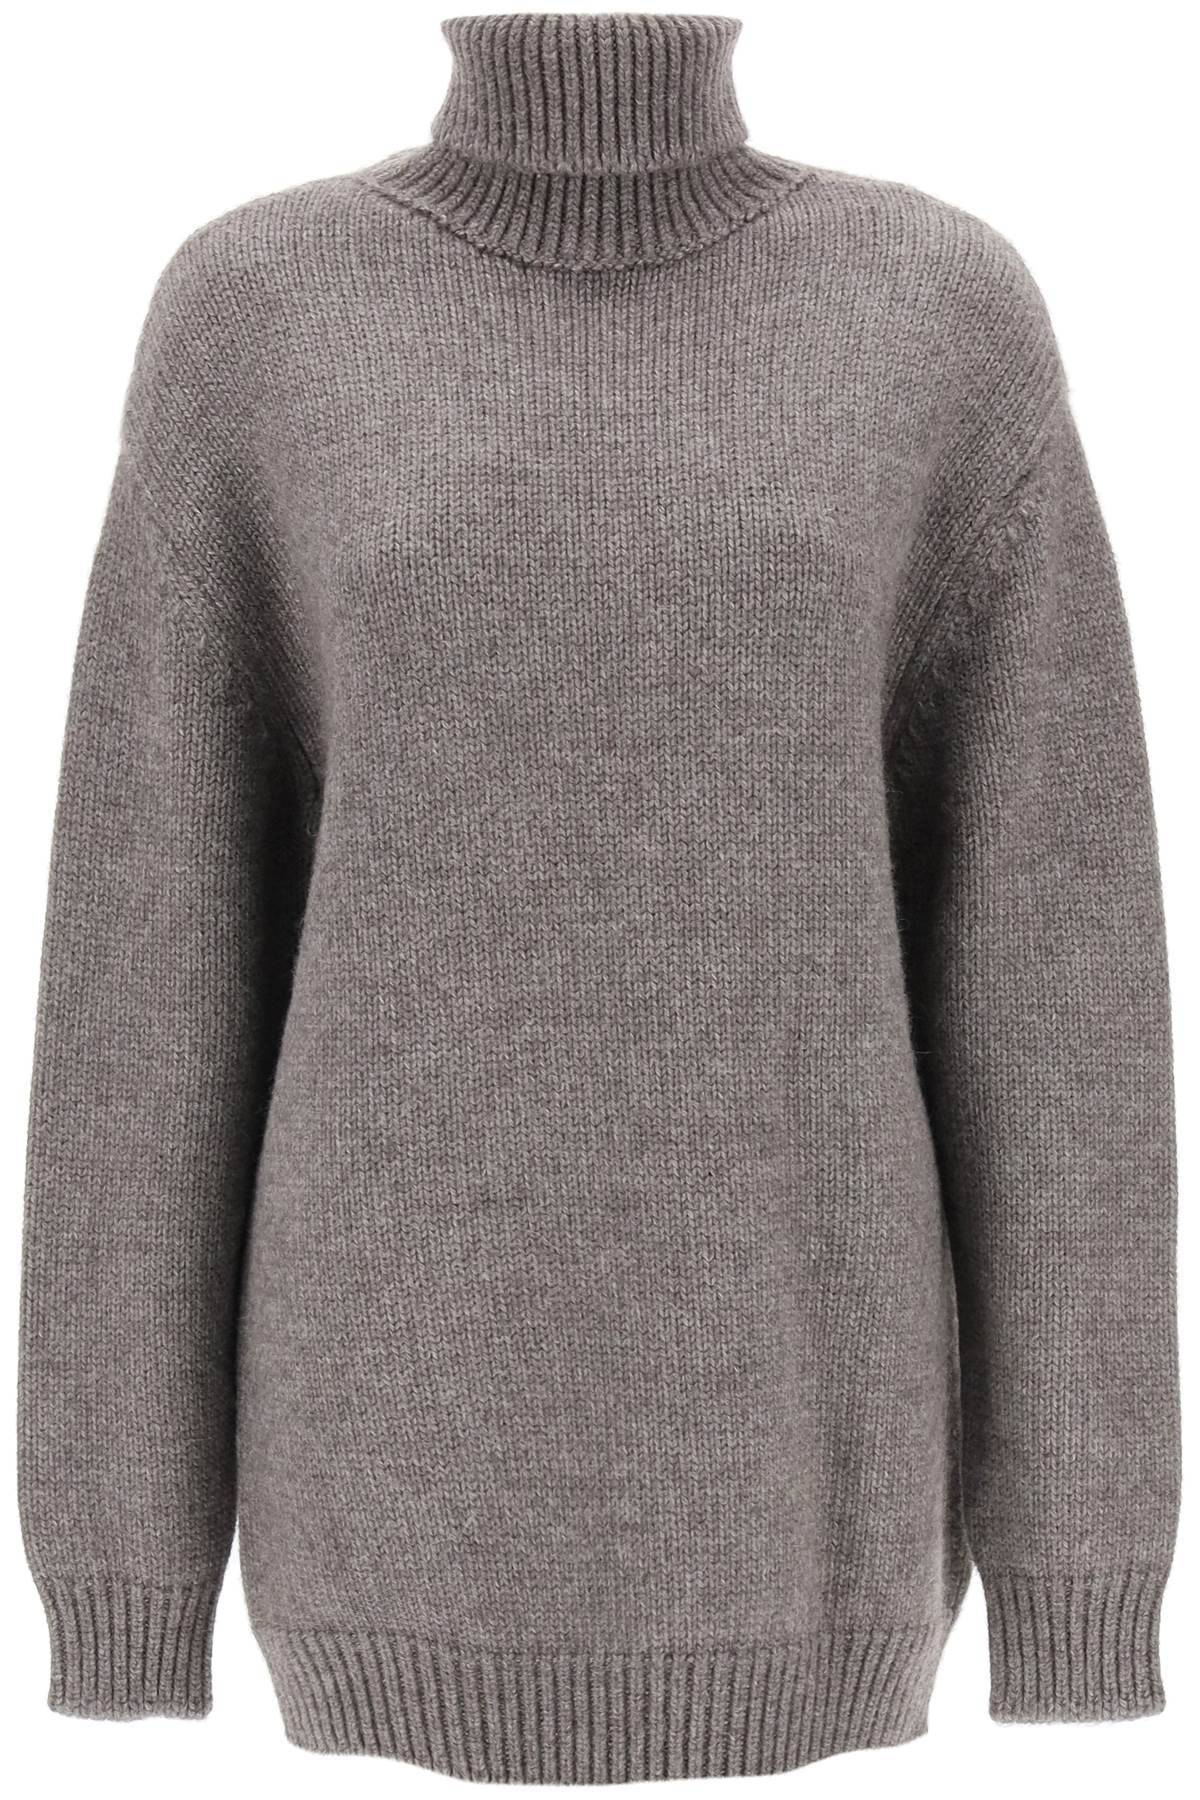 The Row Elu Maxi Turtleneck Sweater In Alpaca And Silk In Grey